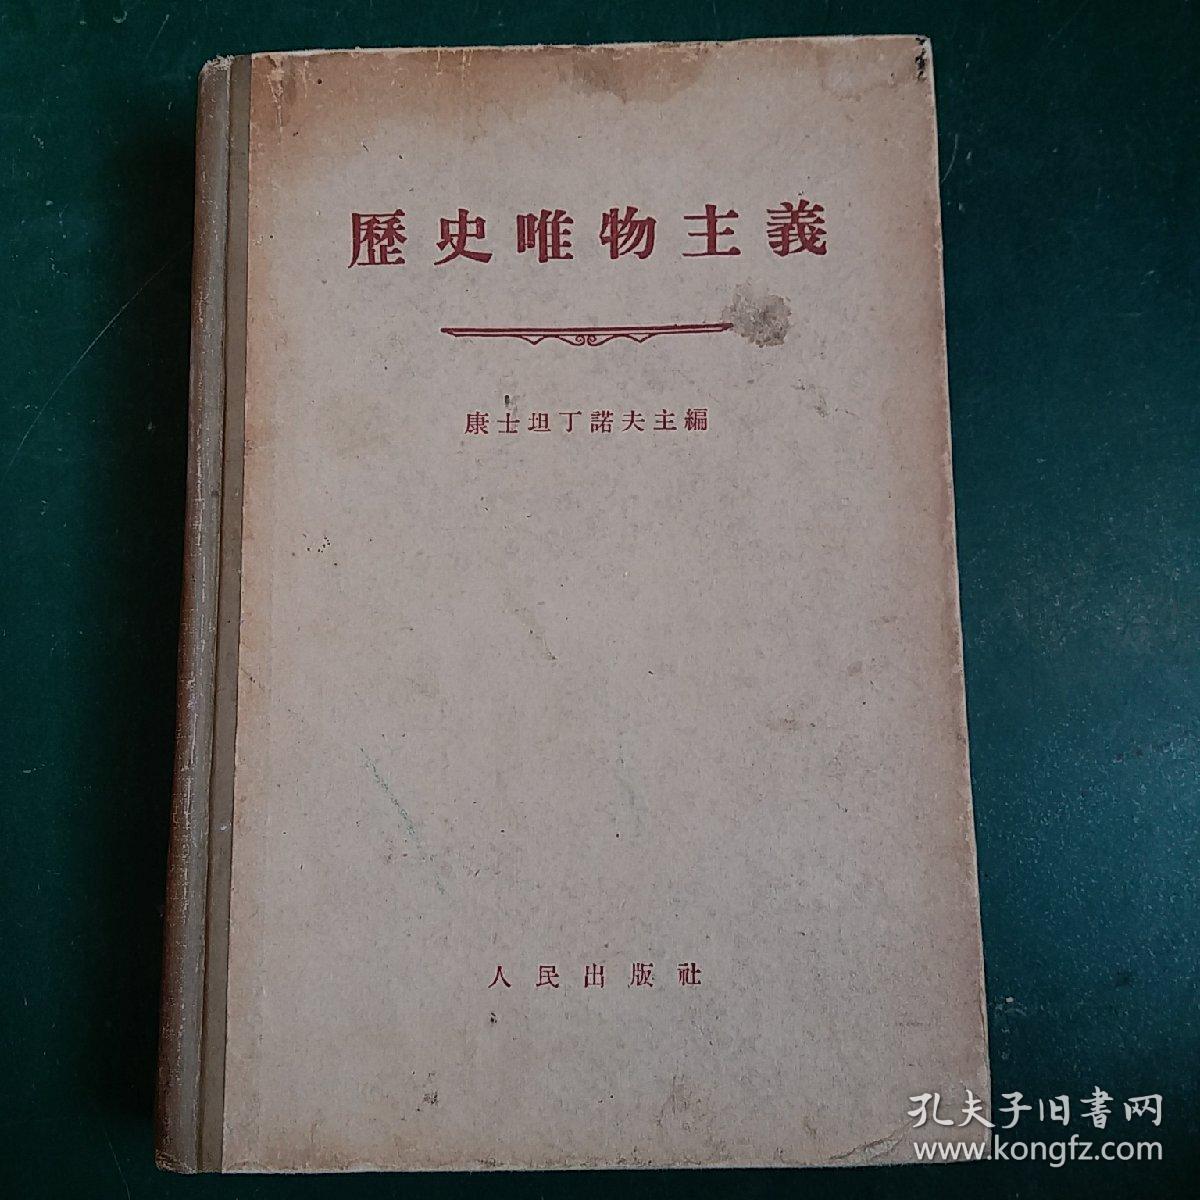 历史唯物主义1955年第一
版